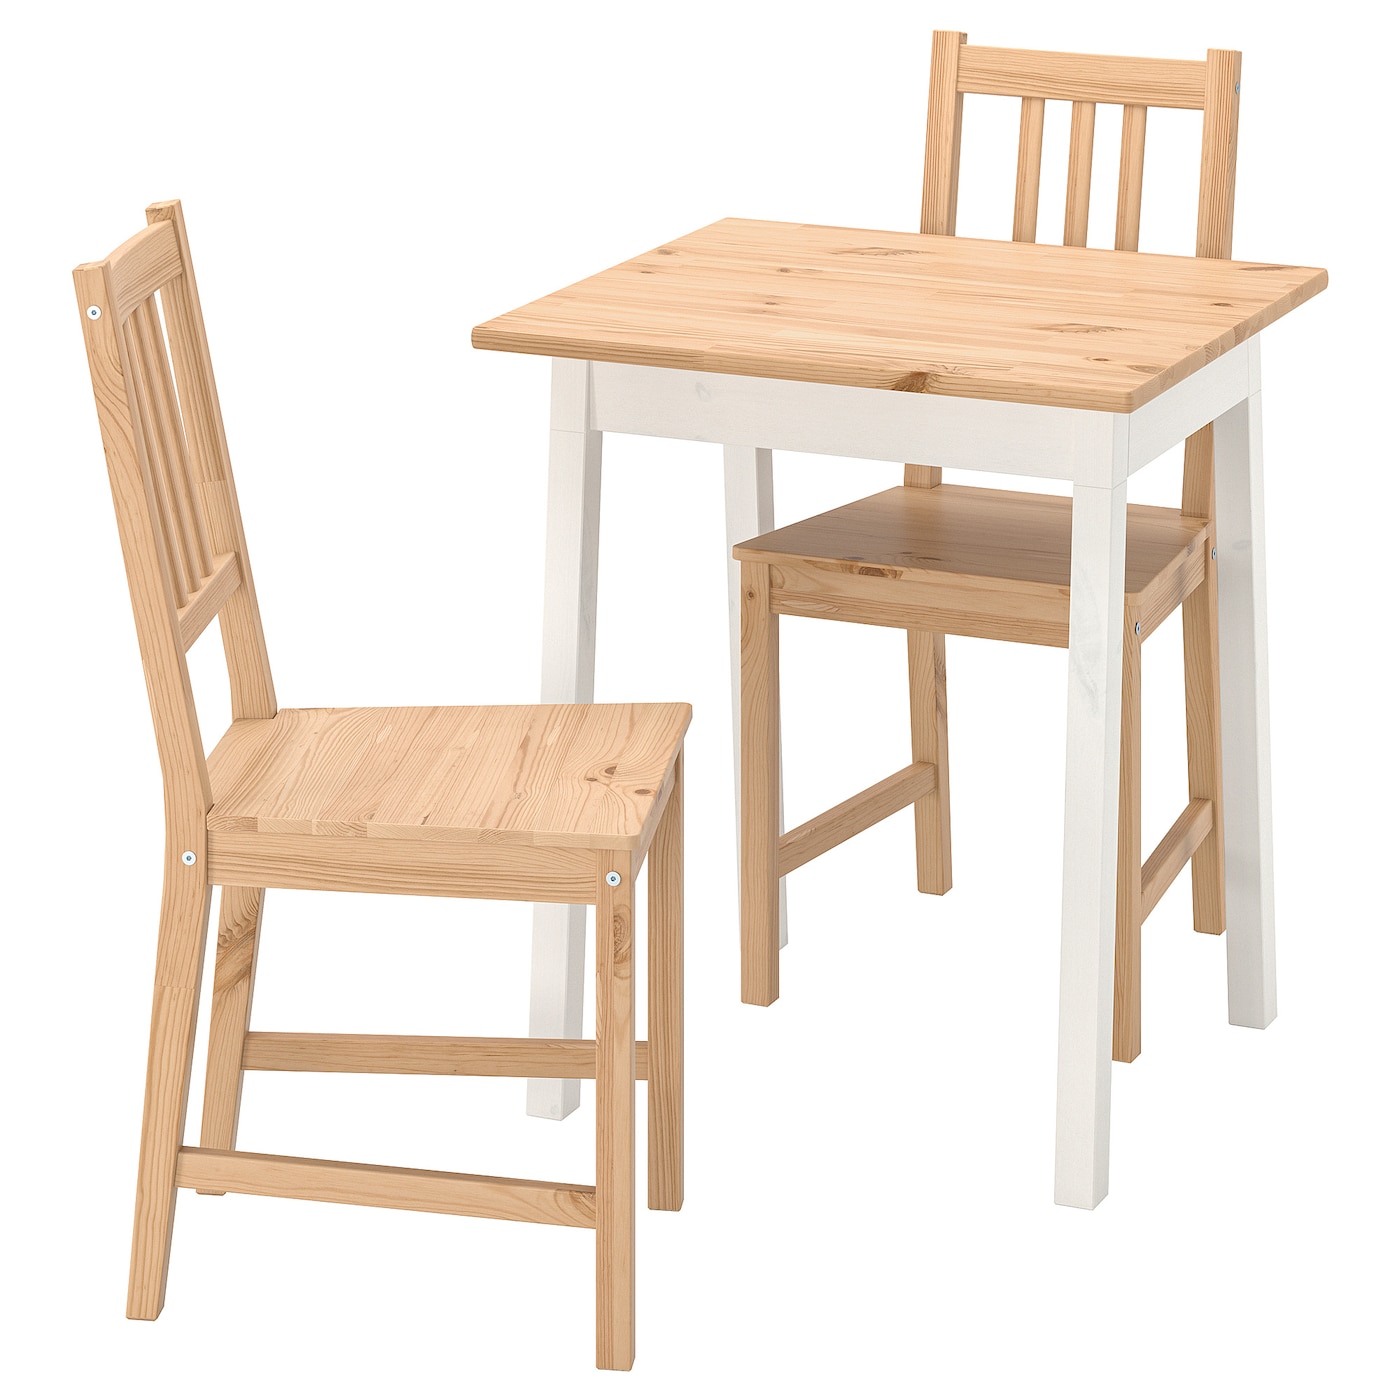 Стол и 2 стула - PINNTORP IKEA/ ПИННТОРП  ИКЕА, 65 см,  под беленый дуб